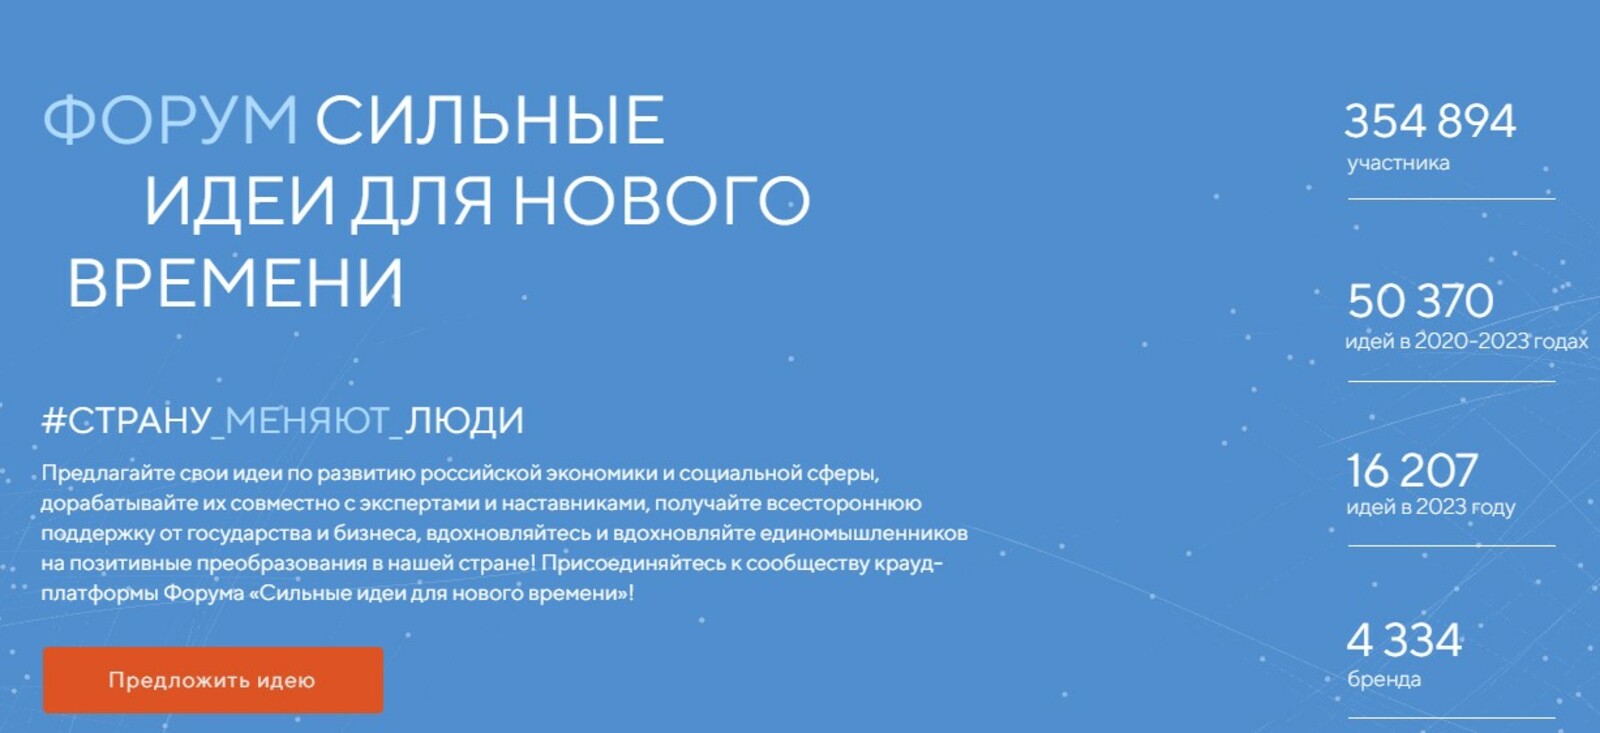 У жителей Башкортостана осталось четыре дня для подачи заявок на участие в форуме «Сильные идеи для нового времени»